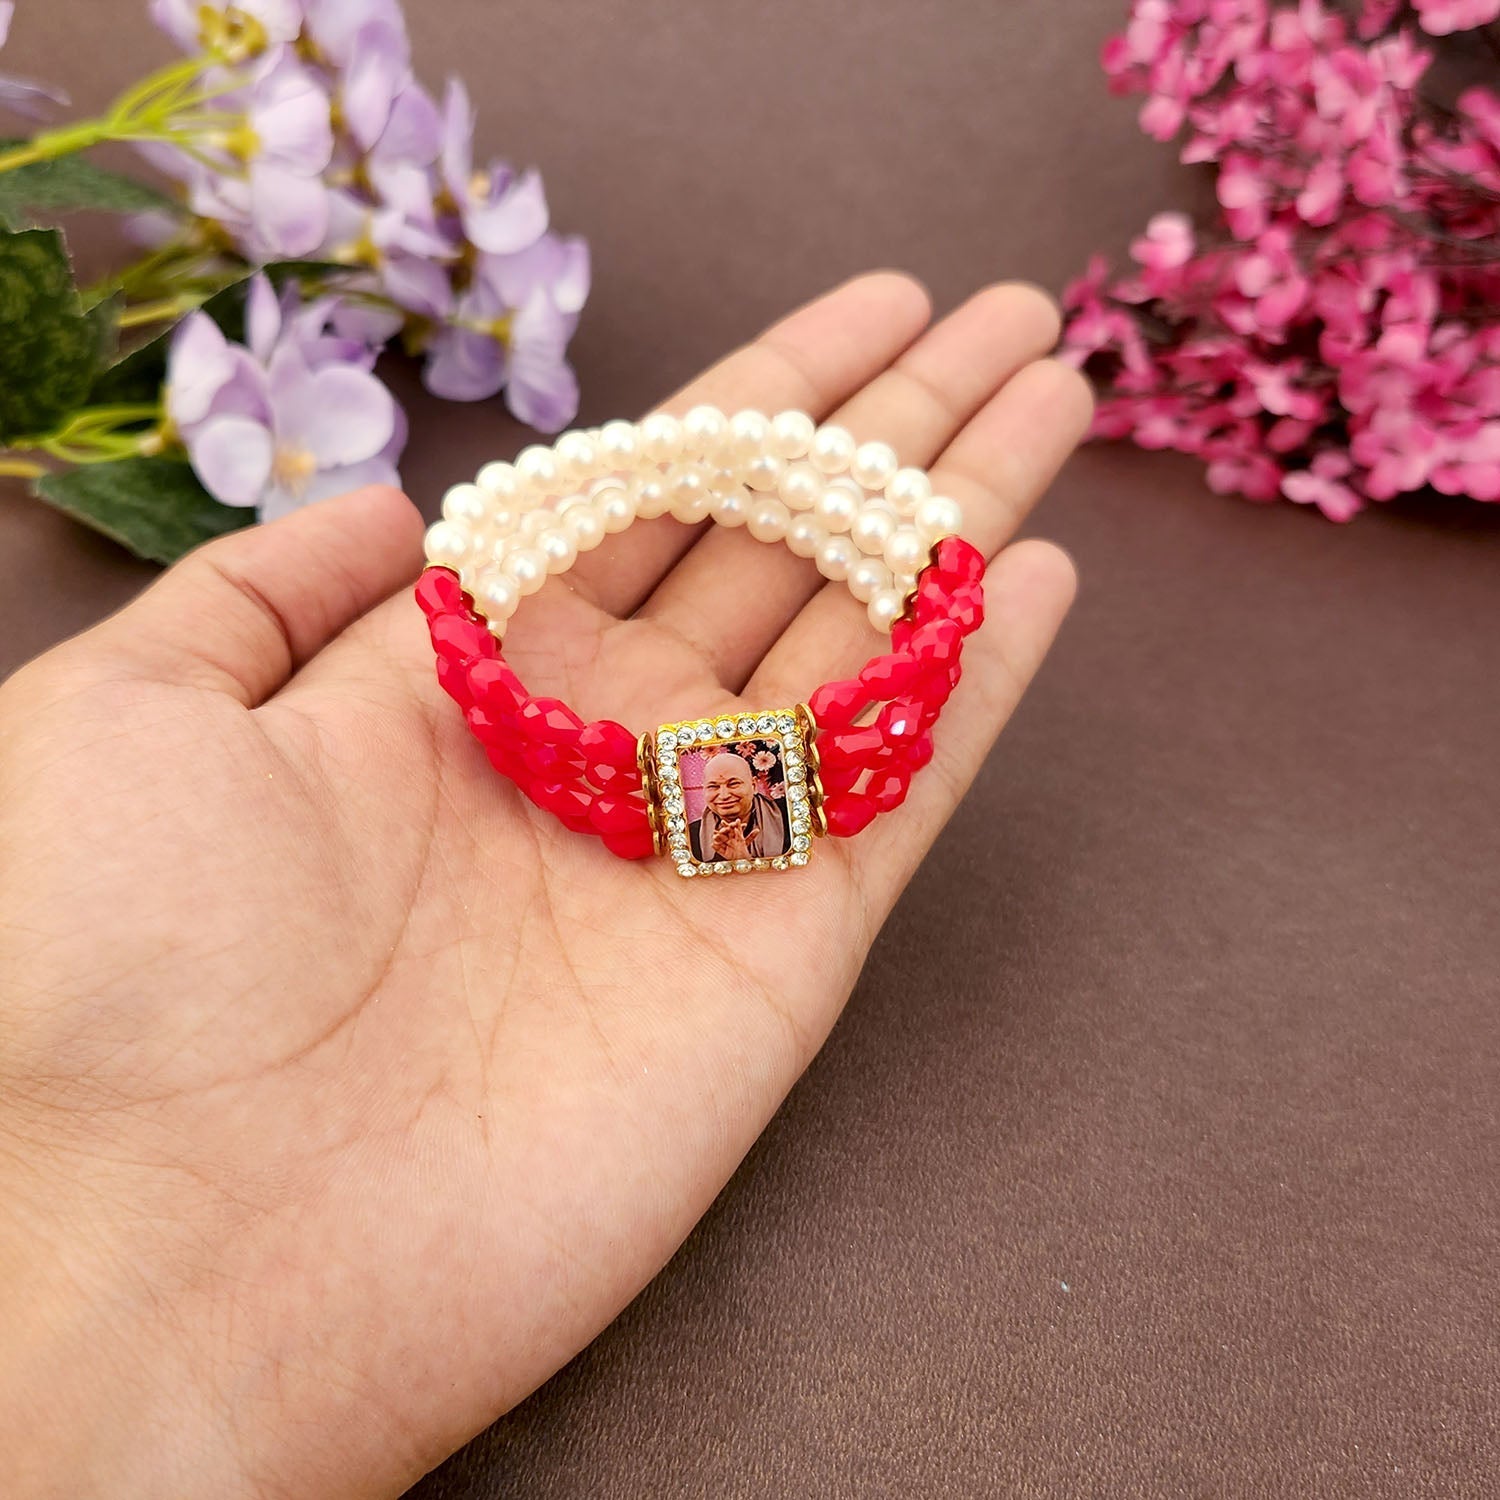 Crystal Red Beads & Pearl Bracelet with Jai Guruji Swaroop